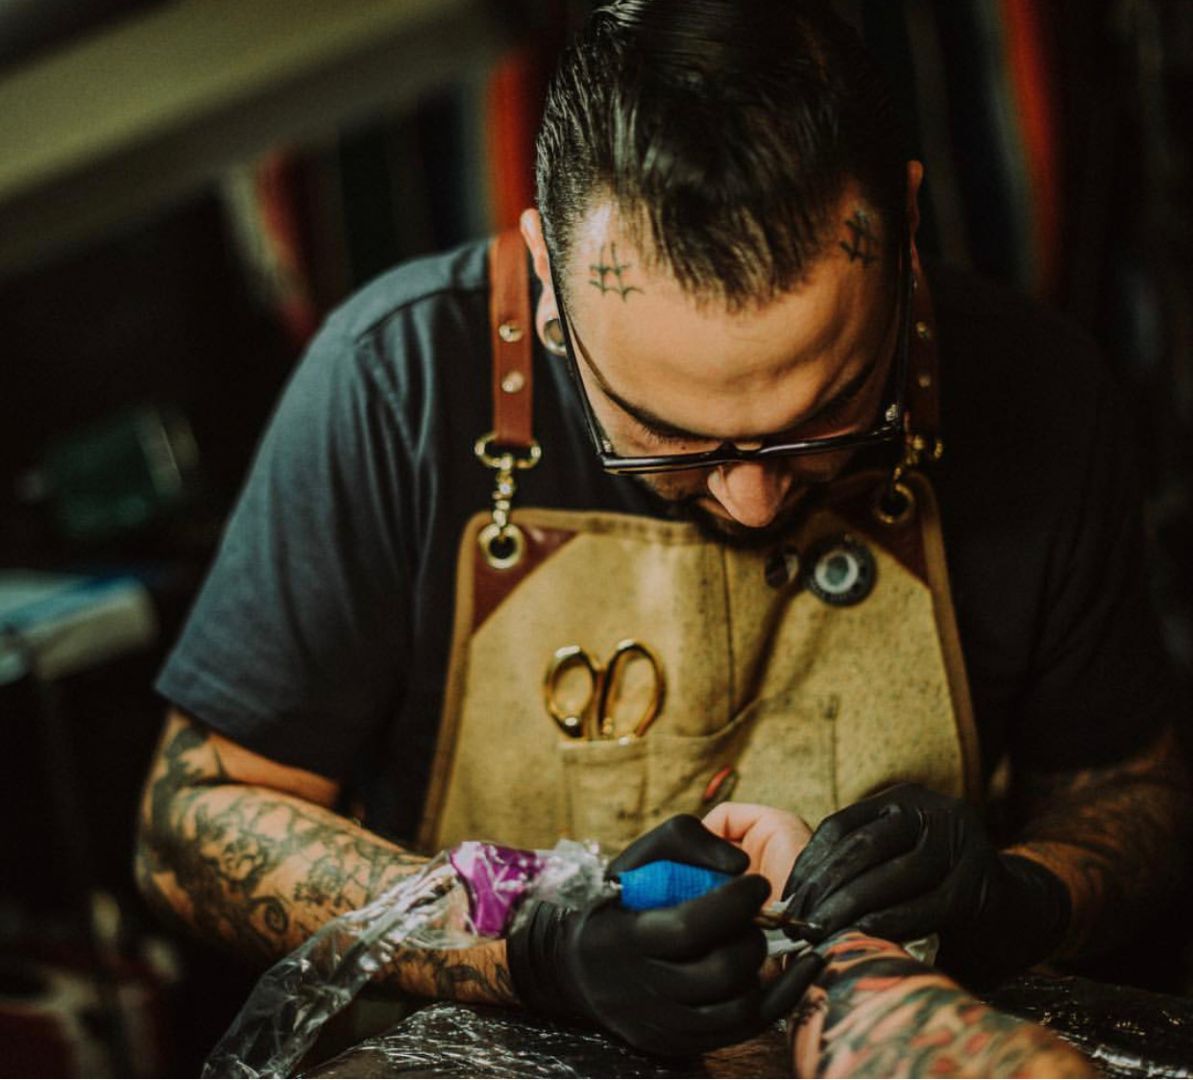 Meet Danny Pando Tattoo Artist SHOUTOUT DFW